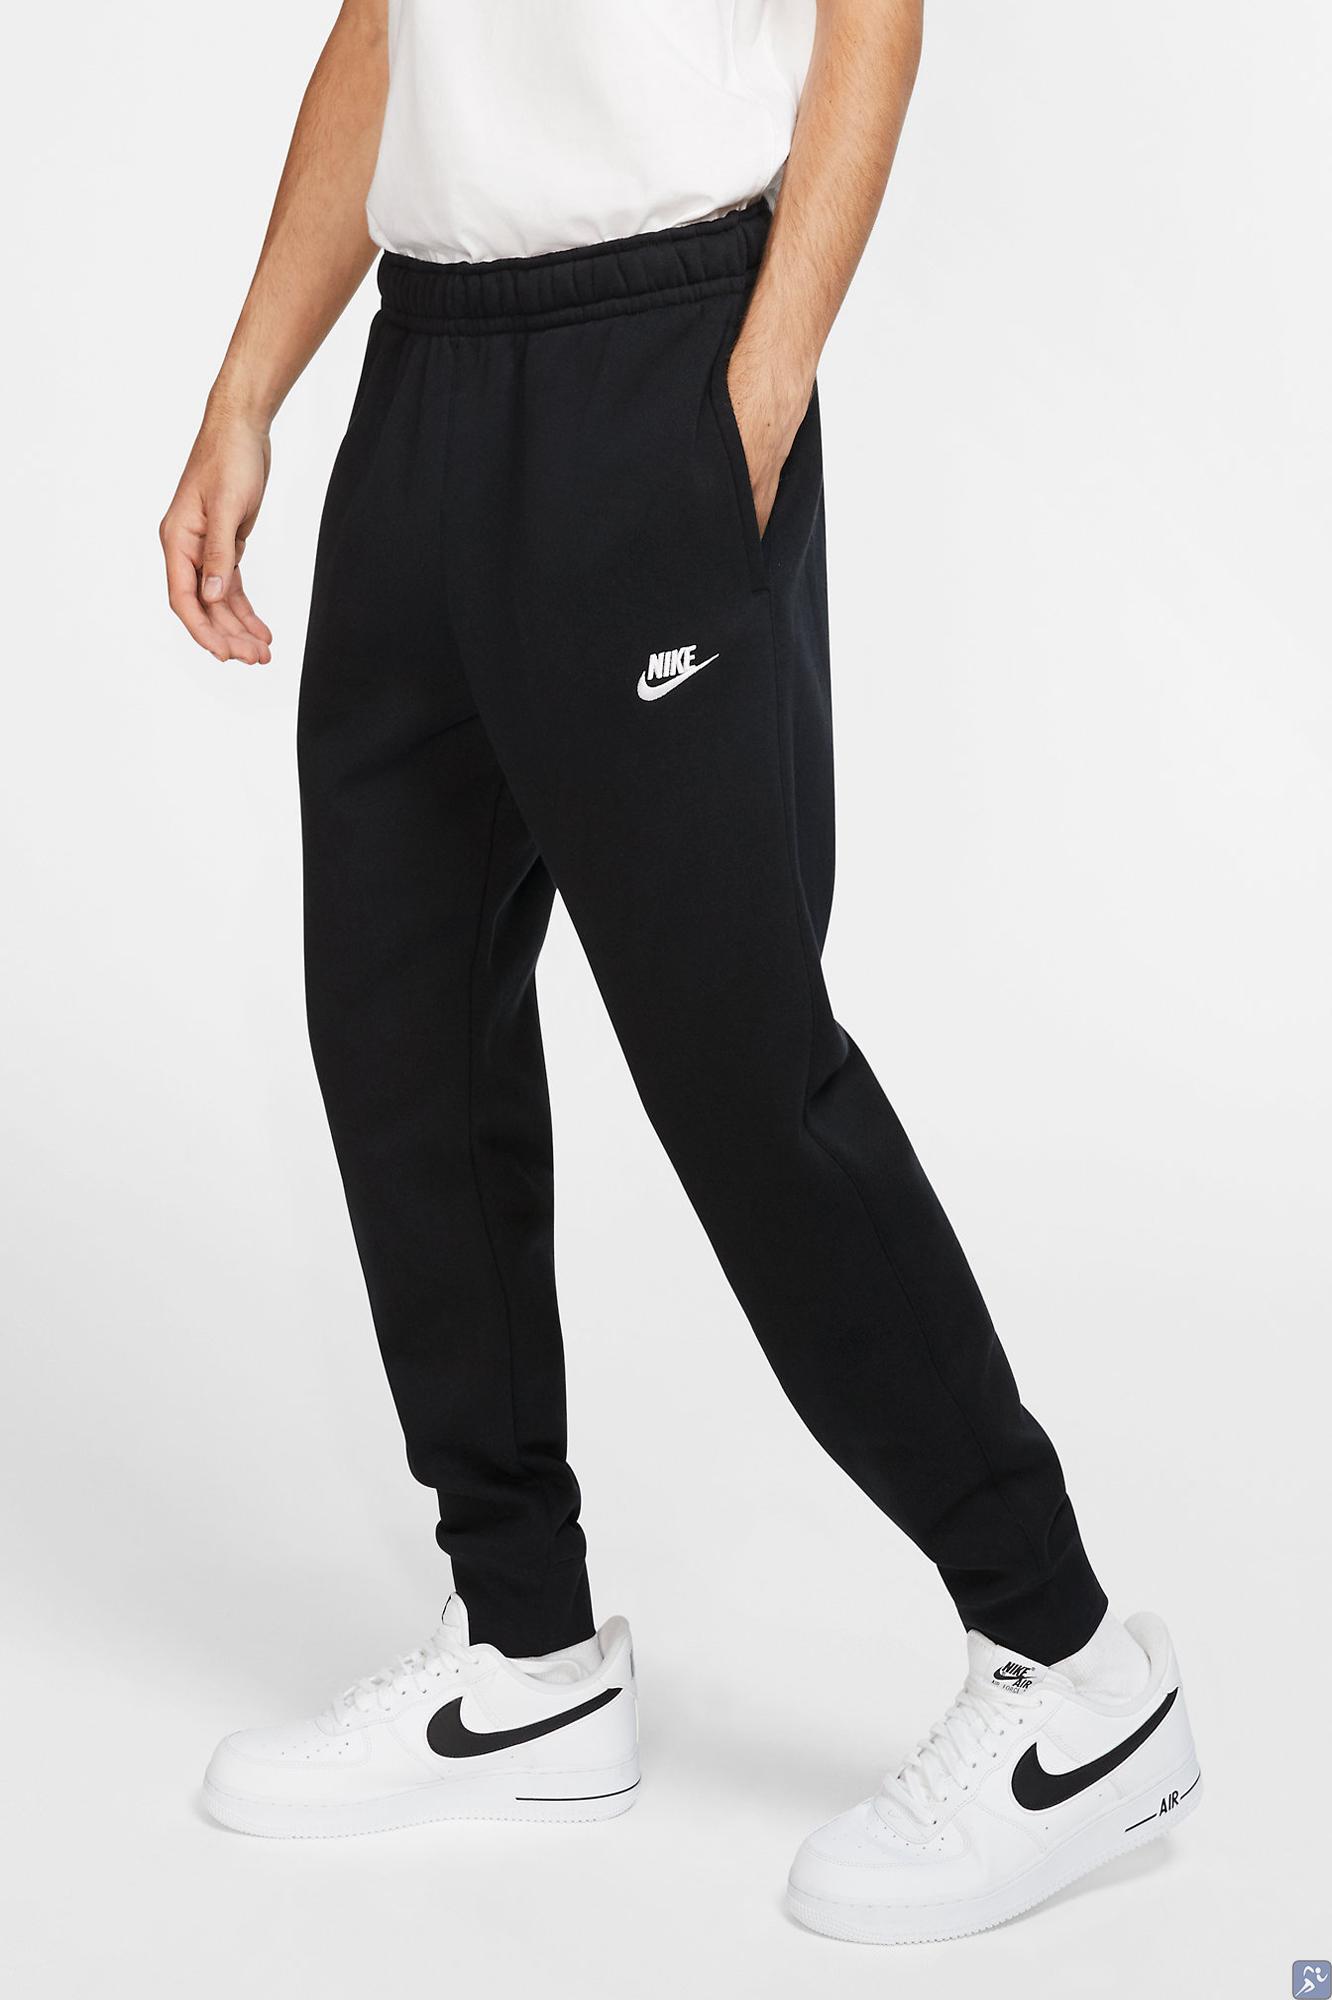 Спортивные брюки мужские Nike Sportswear Club BV2679 010 - купить в интернет магазине Acrobat24.ru 